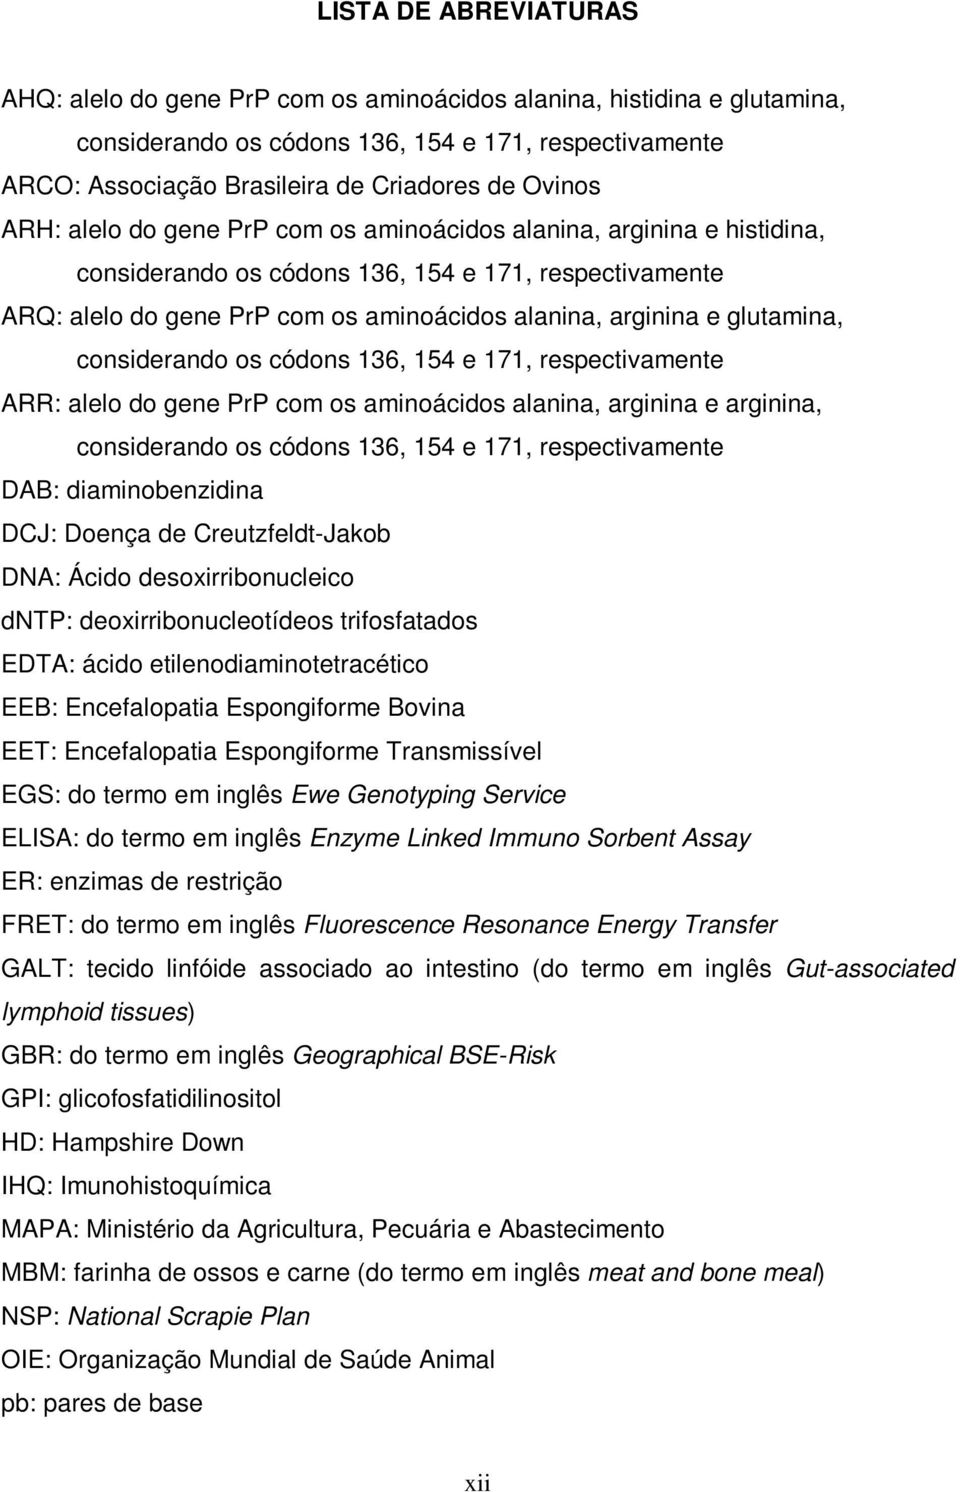 glutamina, considerando os códons 136, 154 e 171, respectivamente ARR: alelo do gene PrP com os aminoácidos alanina, arginina e arginina, considerando os códons 136, 154 e 171, respectivamente DAB: